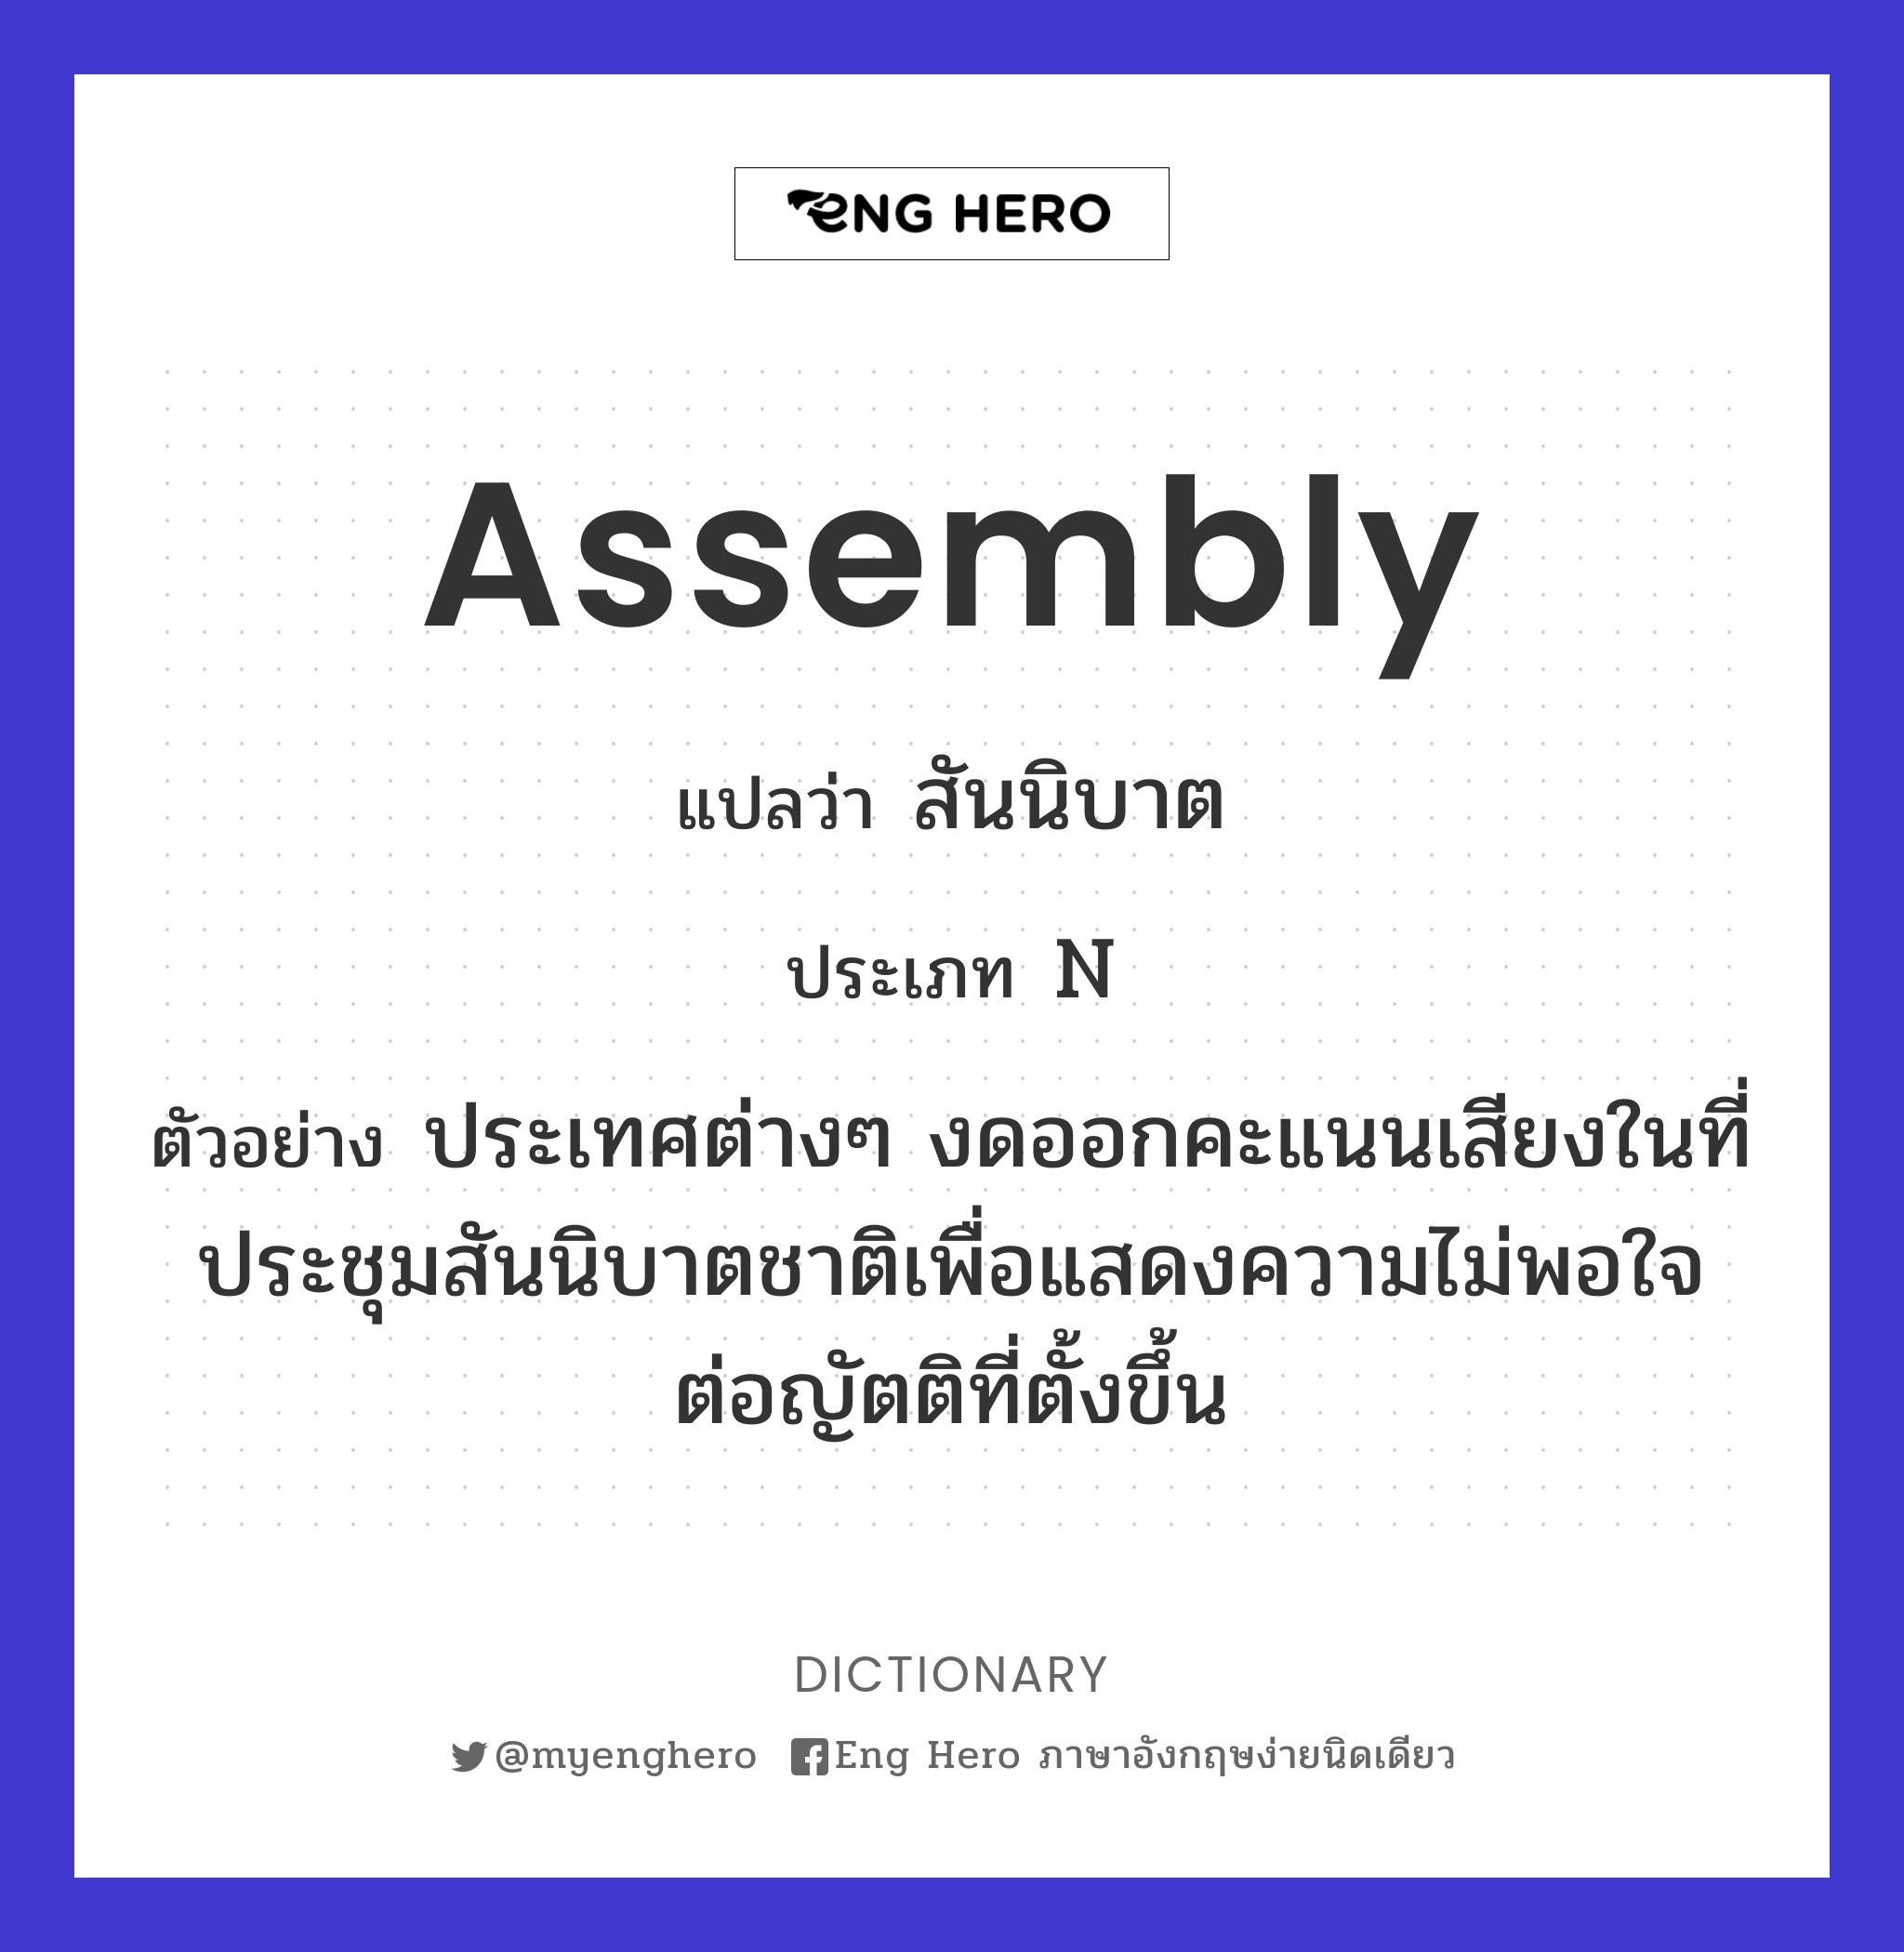 assembly